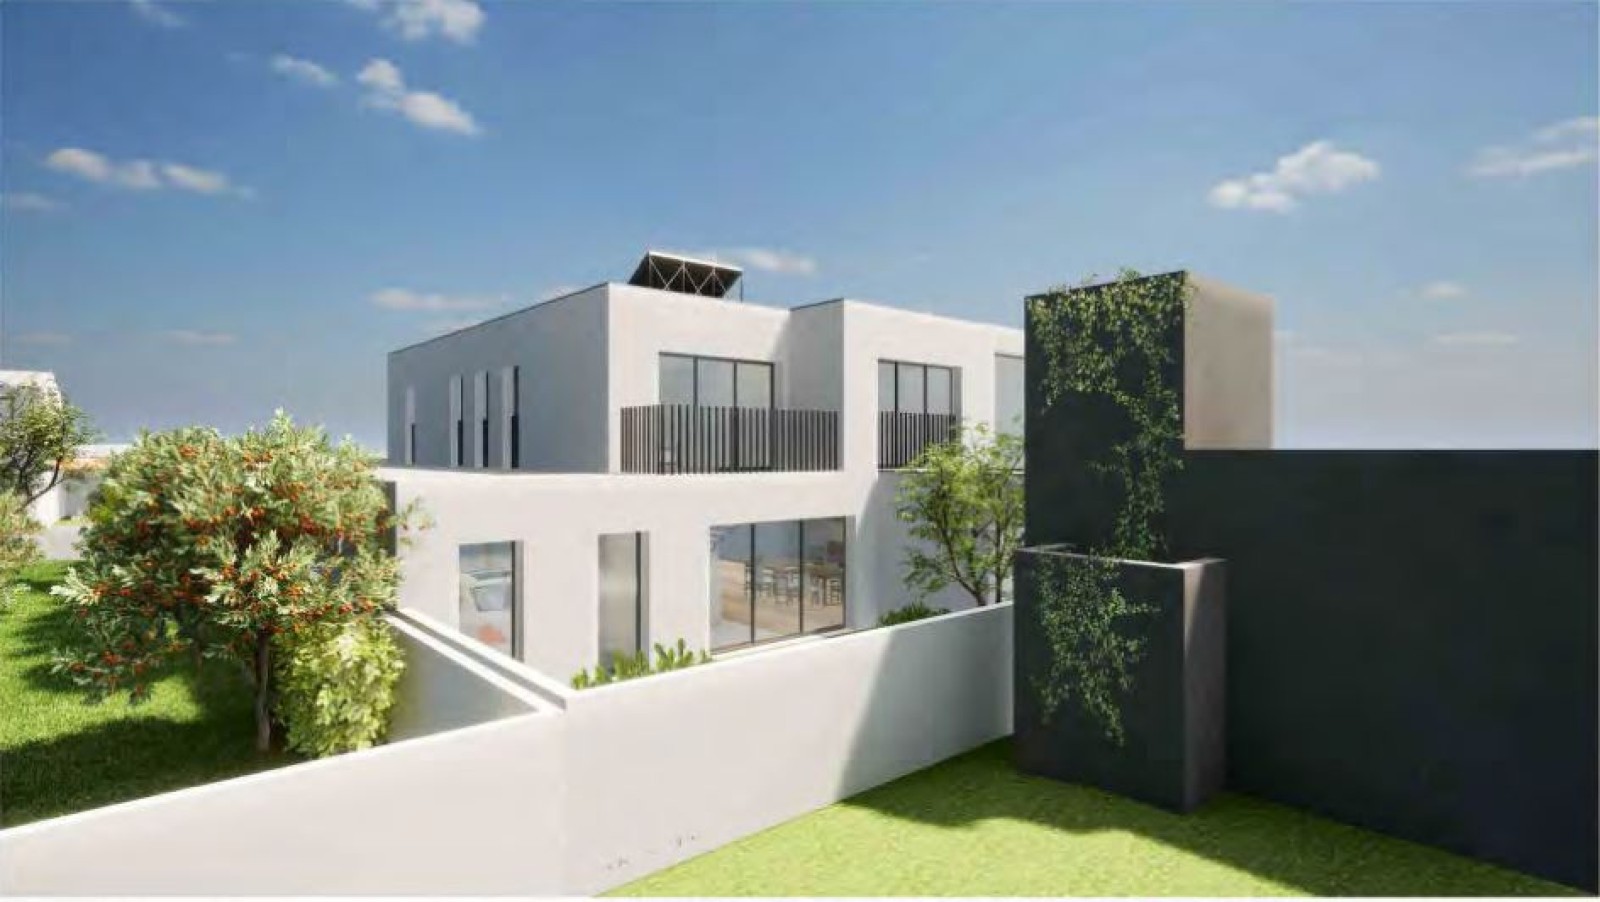 Villa de 3 dormitorios cerca de playa, en venta, Gaia, Portugal_243393